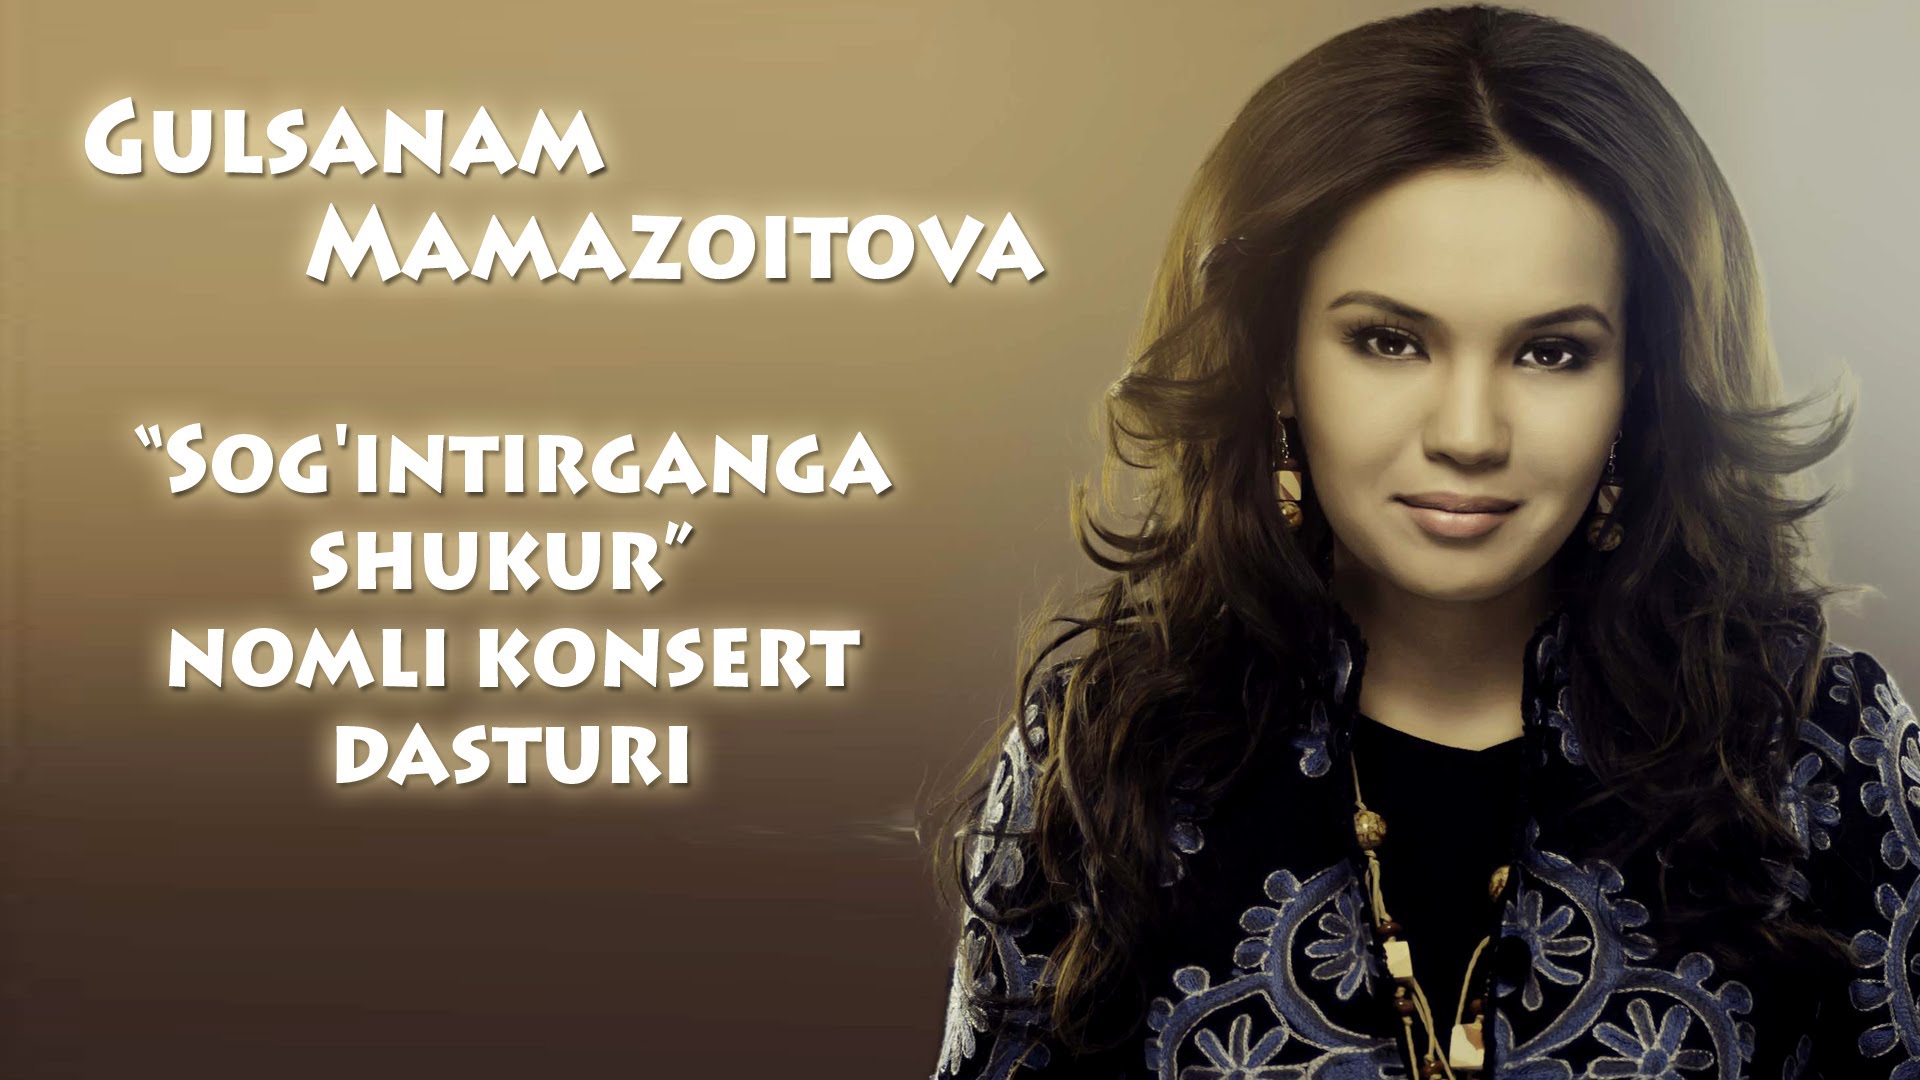 Gulsanam Mamazoitova Sog'intirganga shukur nomli konsert dasturi 2012